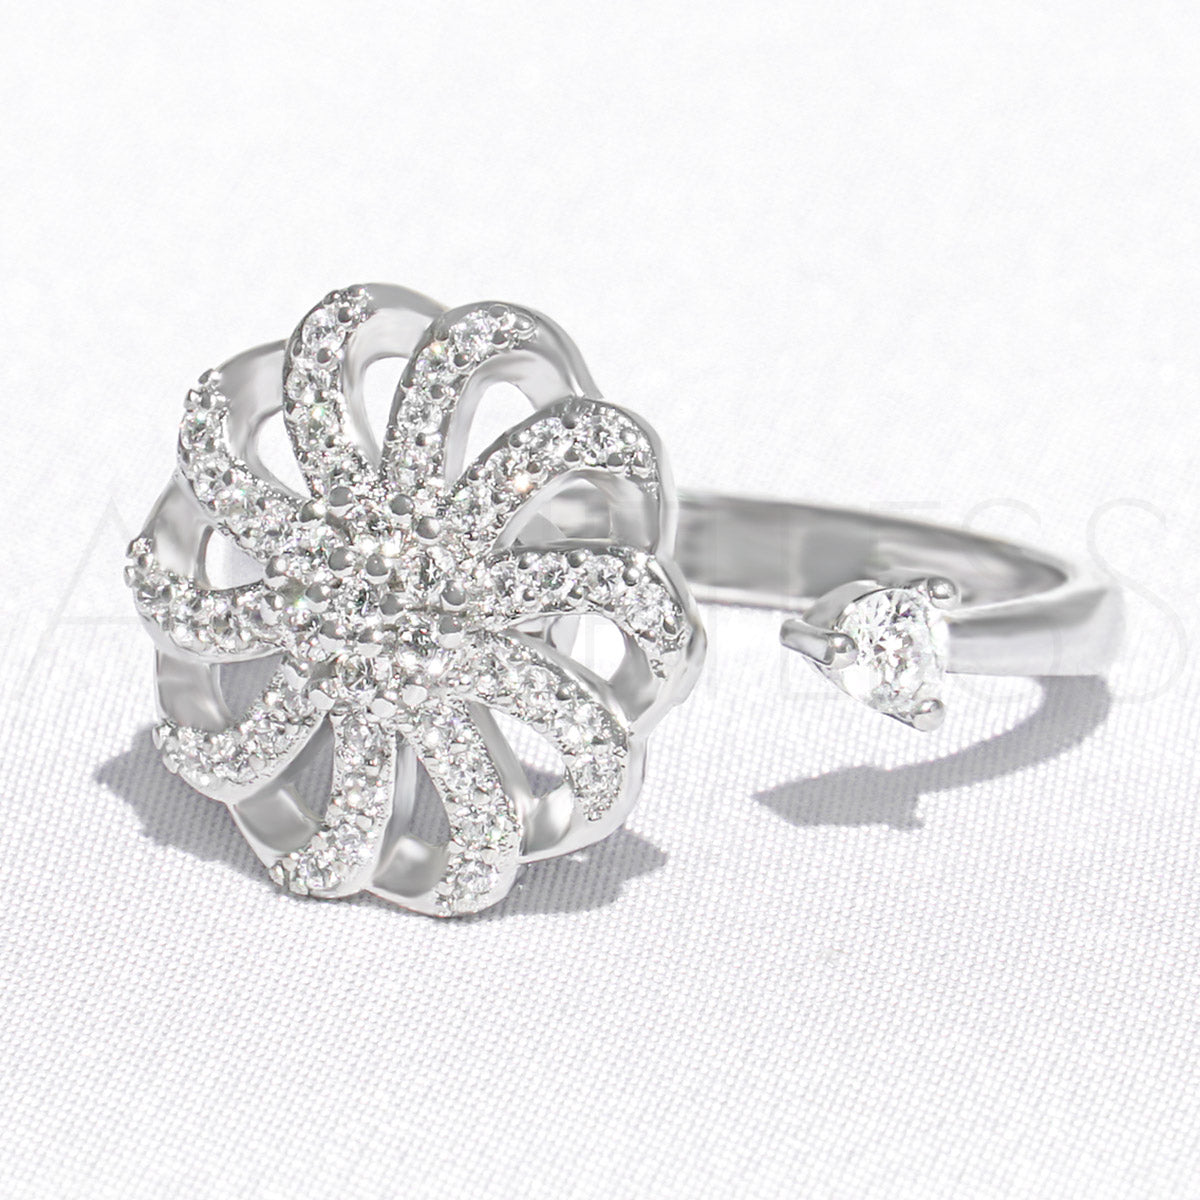 Silver flower fidget ring, spinner ring, against a white background